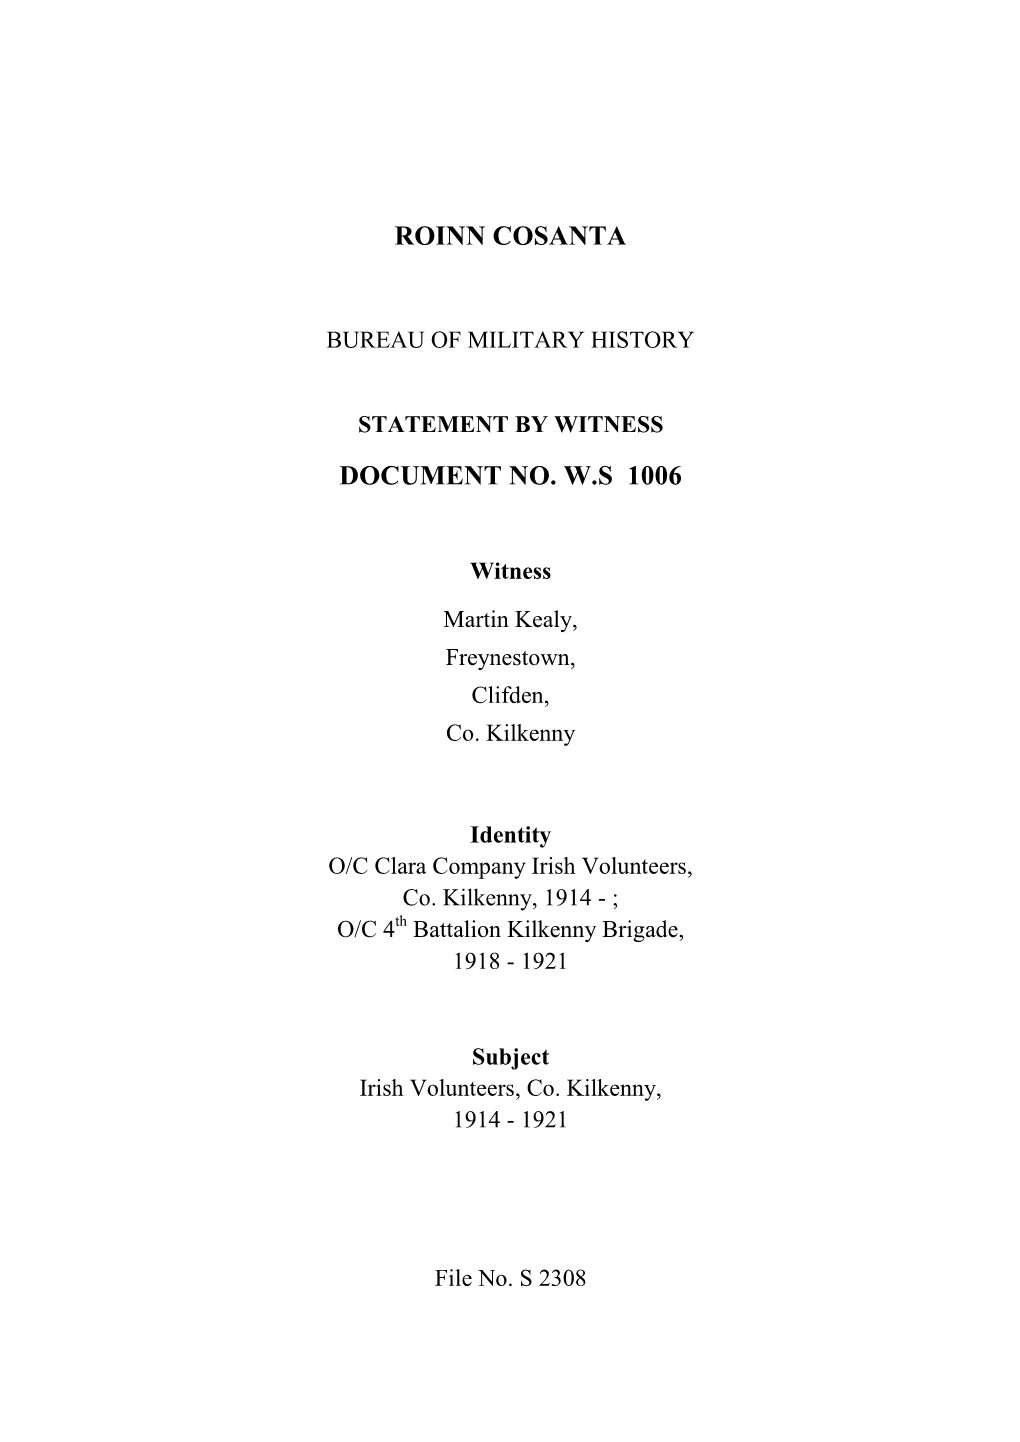 Roinn Cosanta Document No. W.S 1006